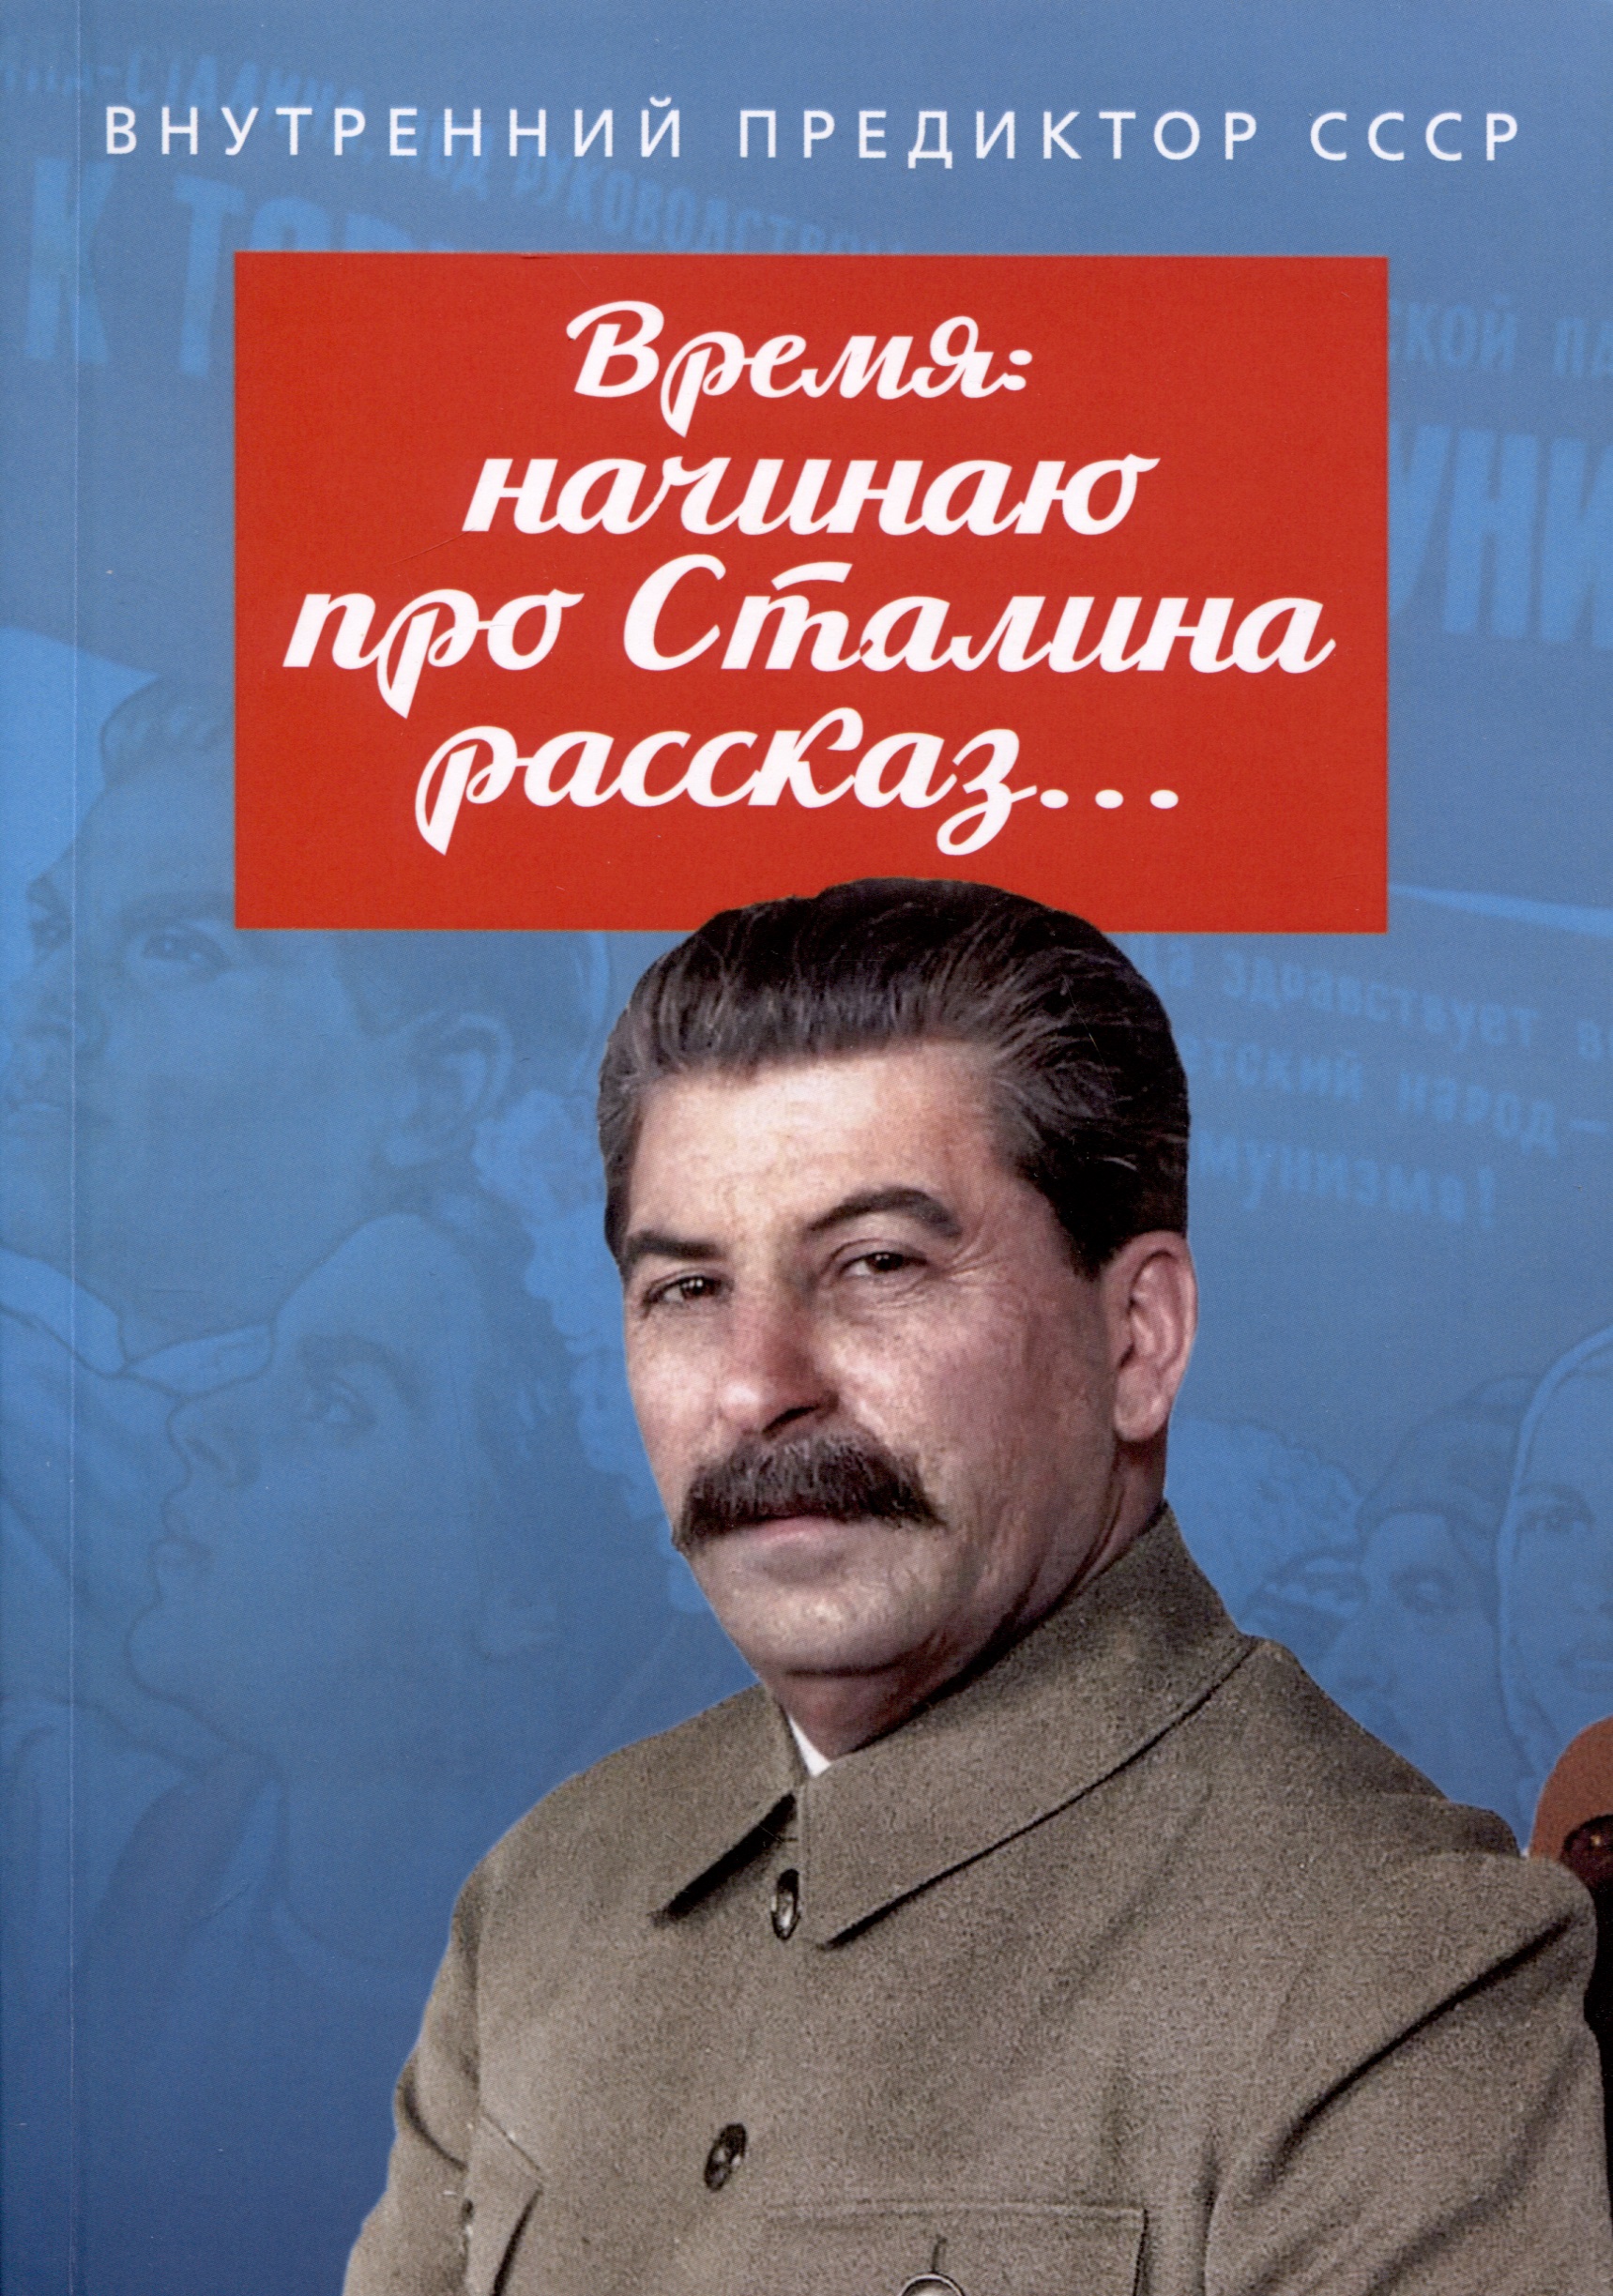 Внутренний Предиктор СССР - Время: начинаю про Сталина рассказ…